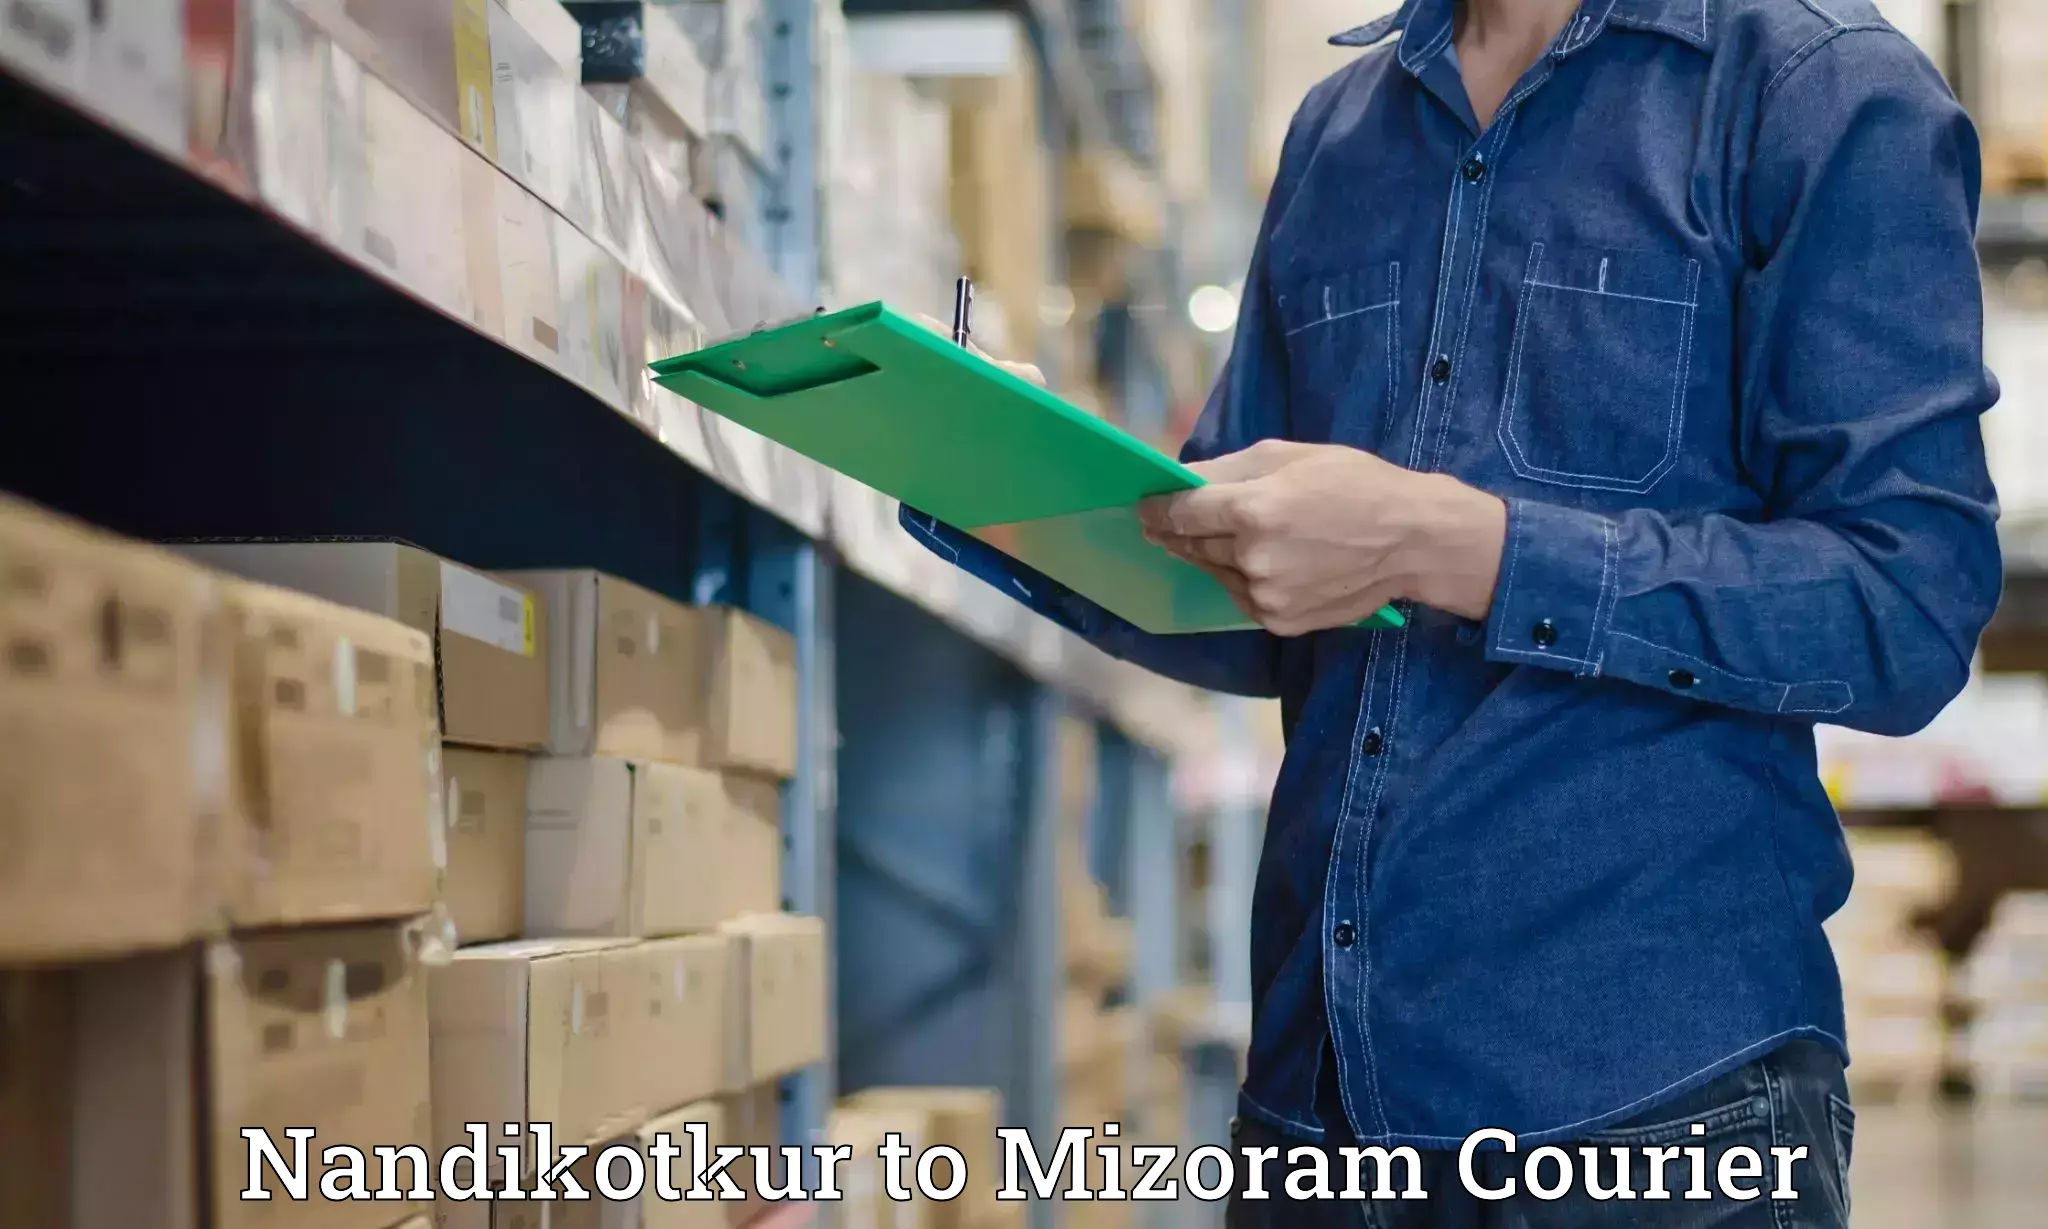 Shipping and handling in Nandikotkur to Aizawl